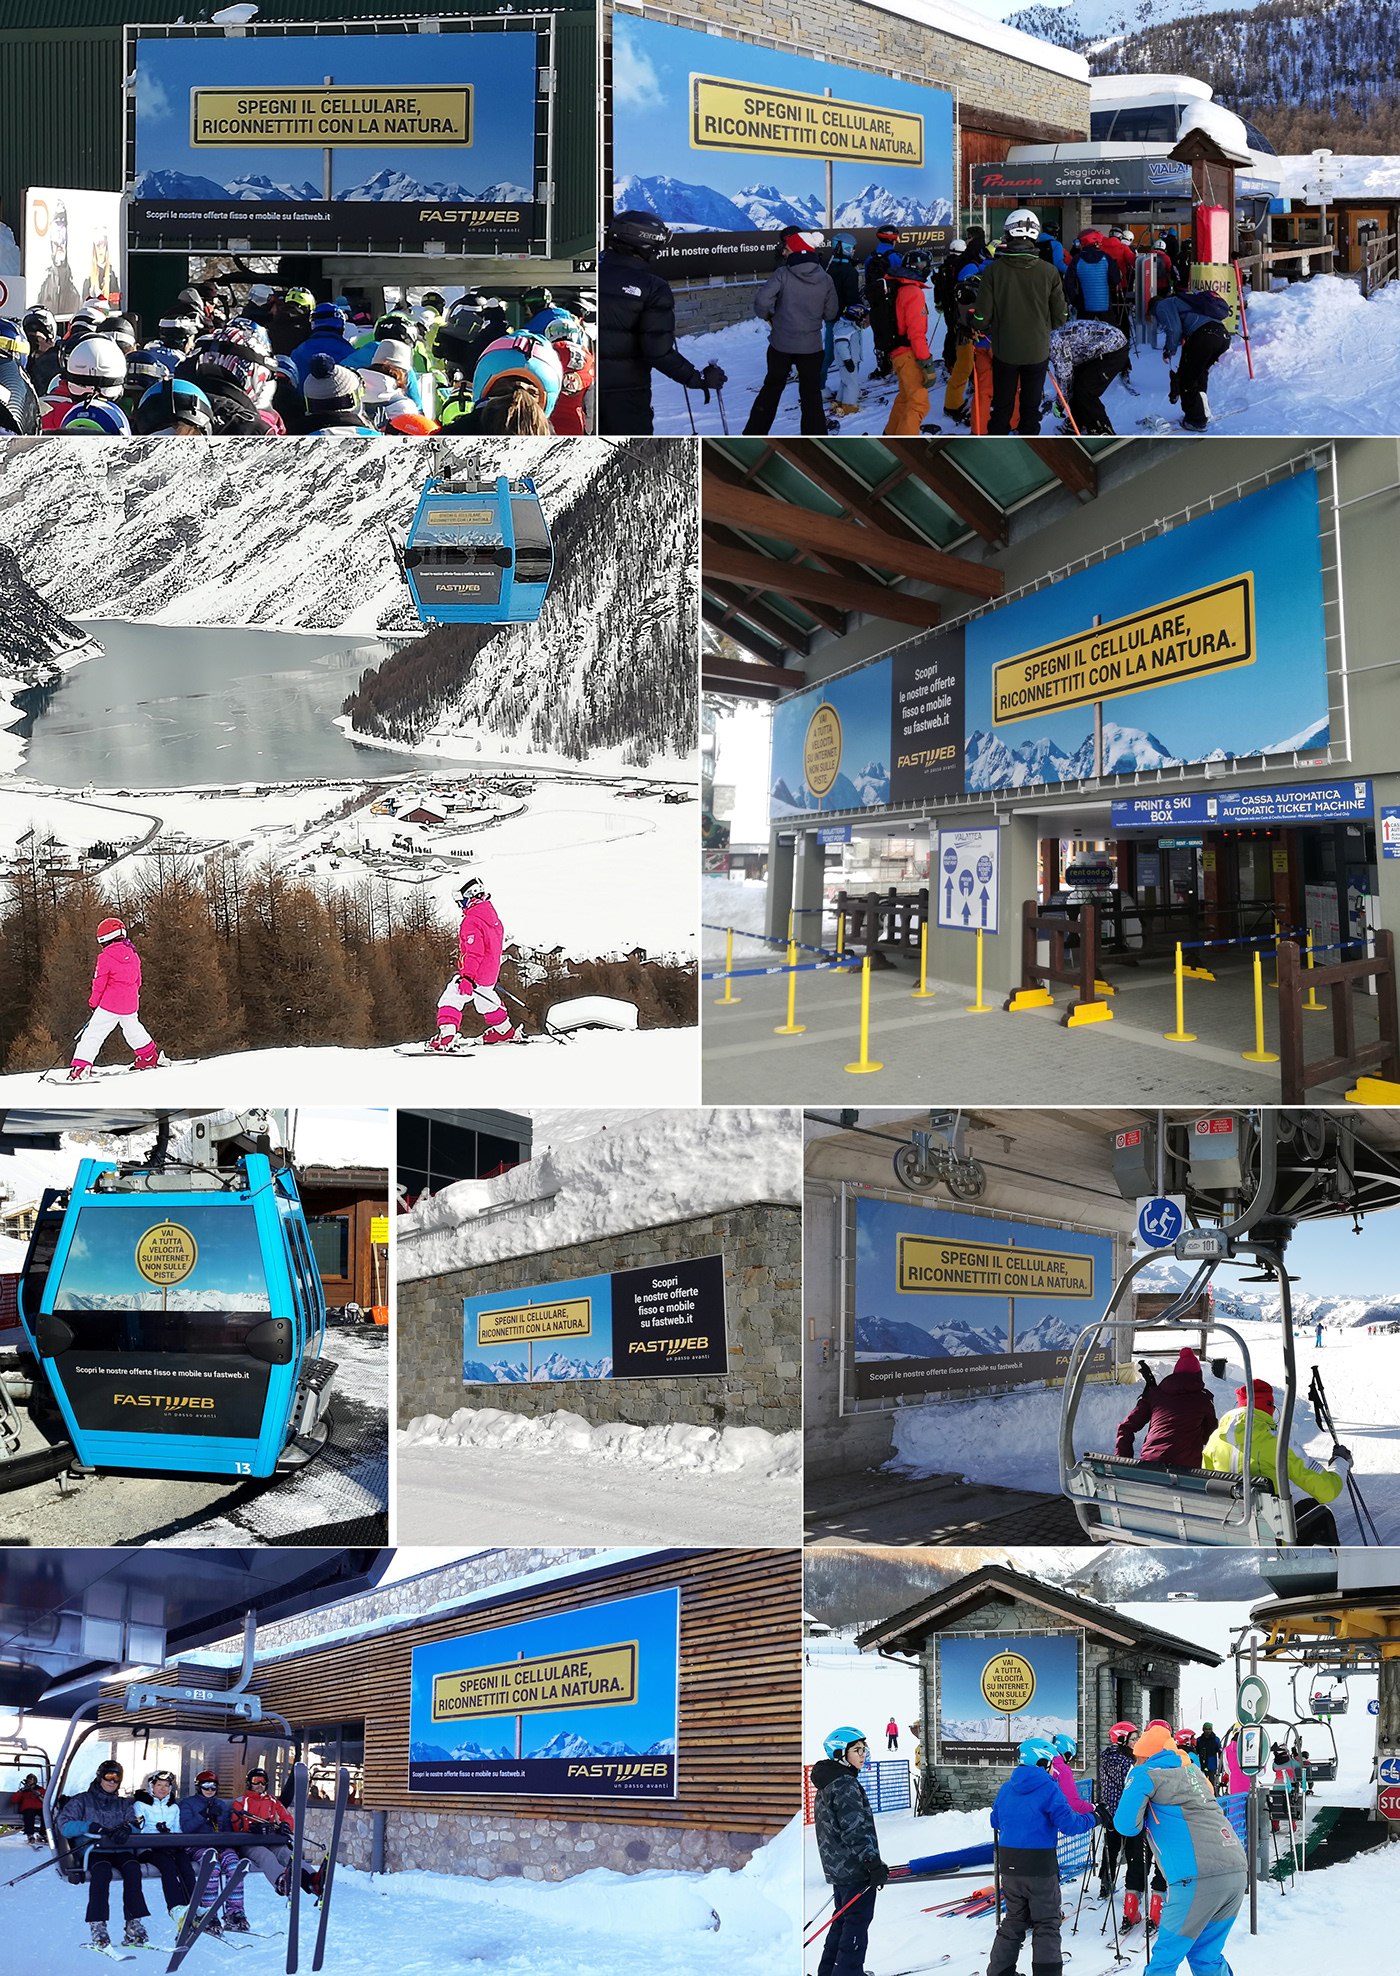 fastweb mountain ADV billboard campaign telco Fibra snow sign yellow